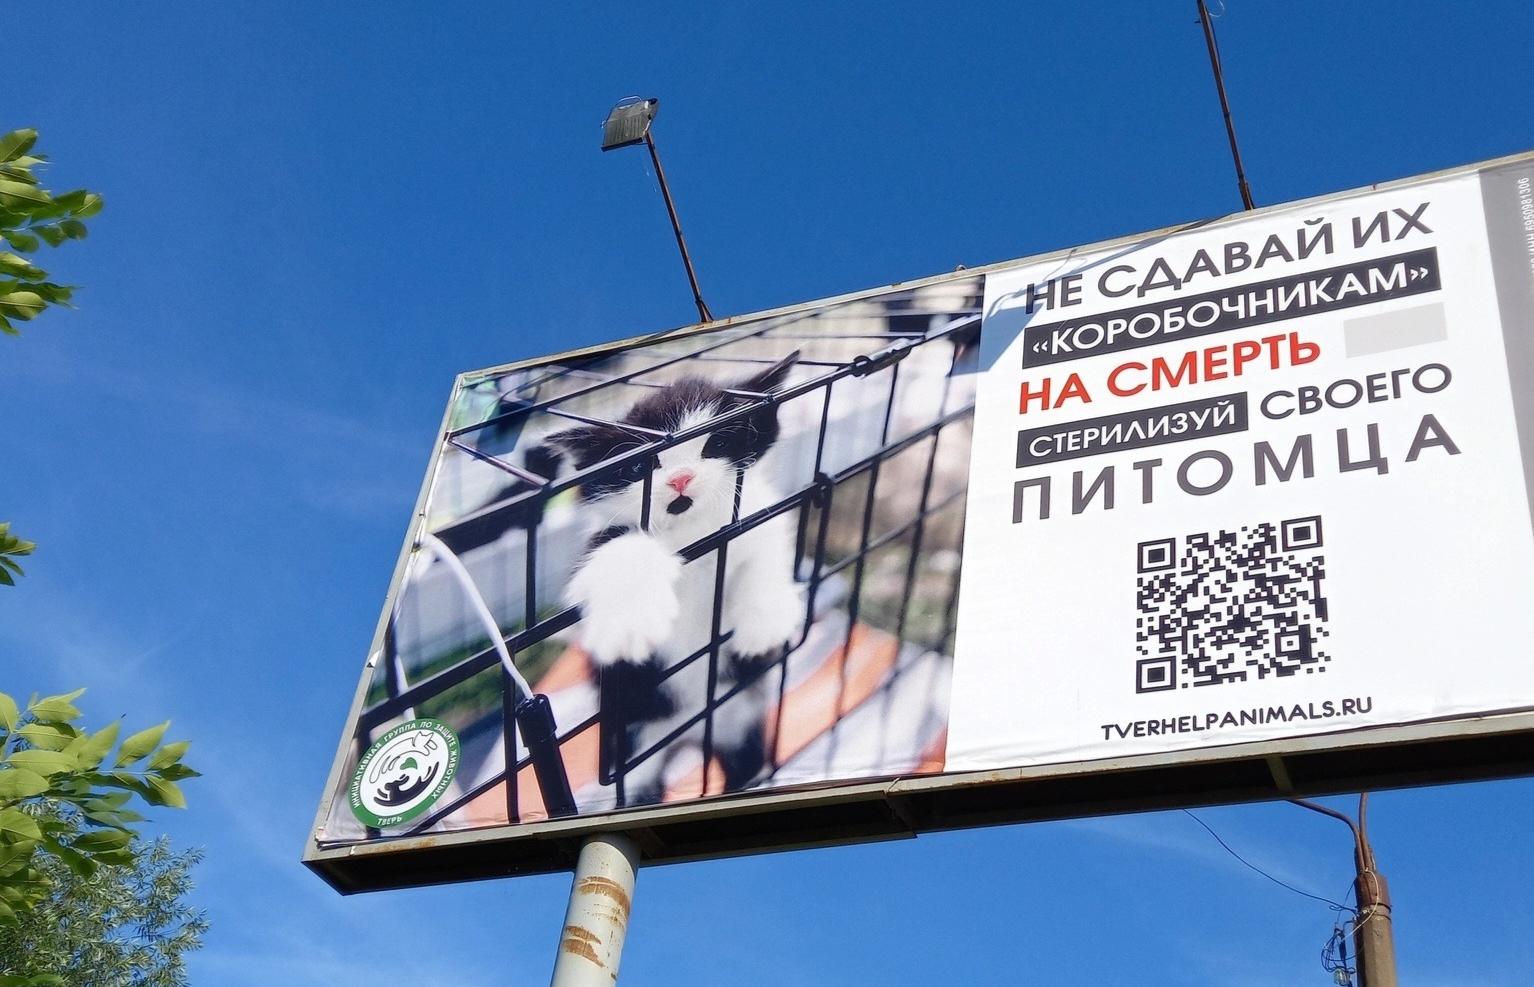 В Тверской области зоозащитники борются против коробочников-убийц - новости Афанасий